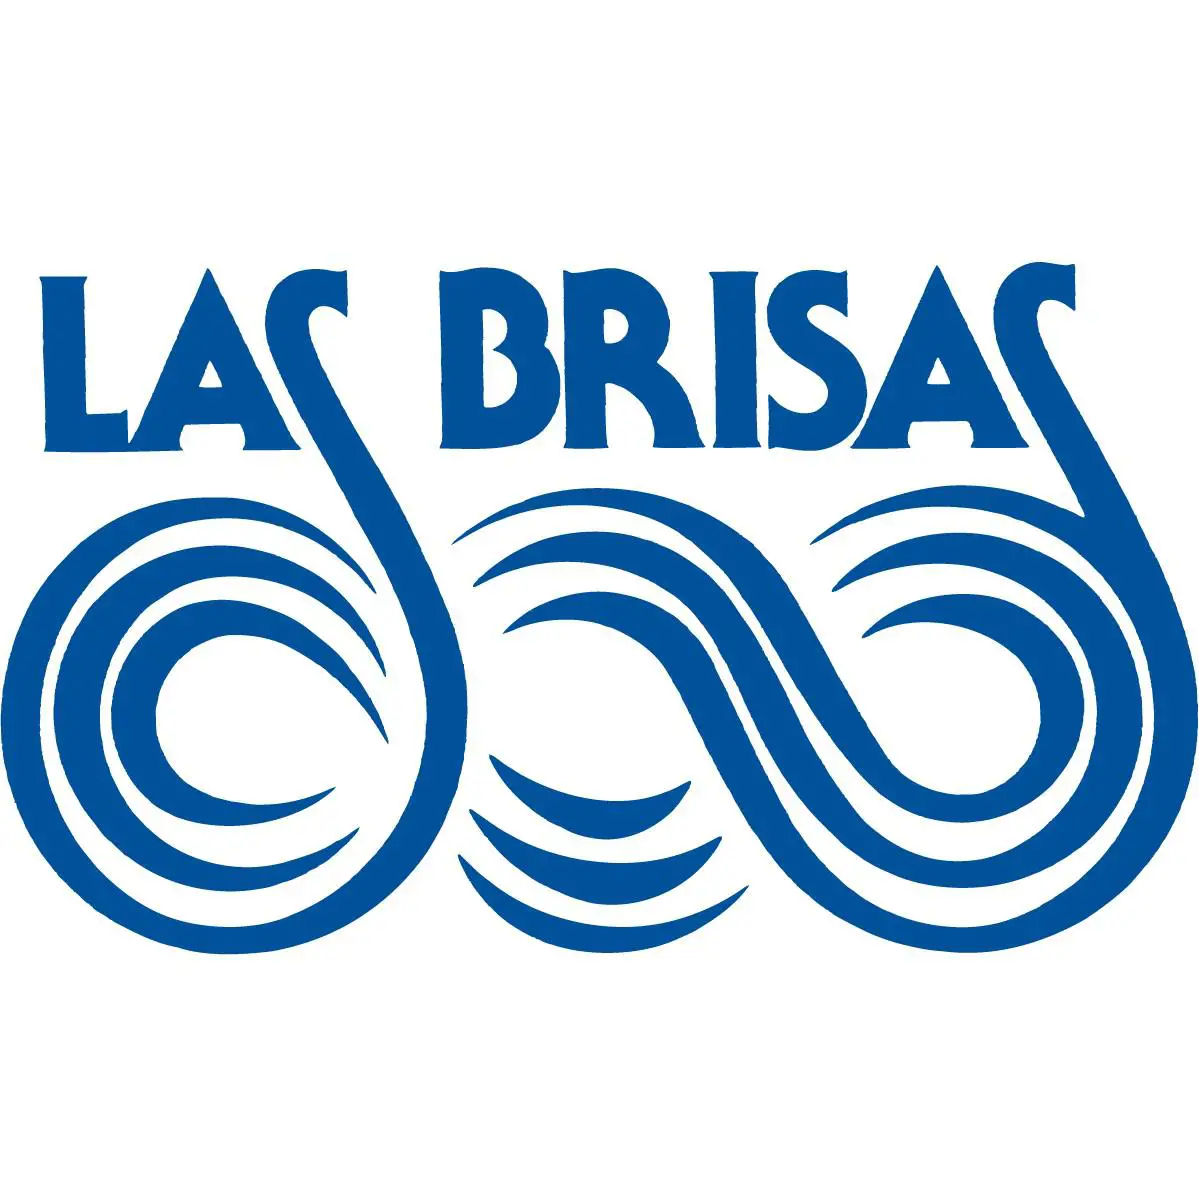 Las Brisas – Laguna Beach